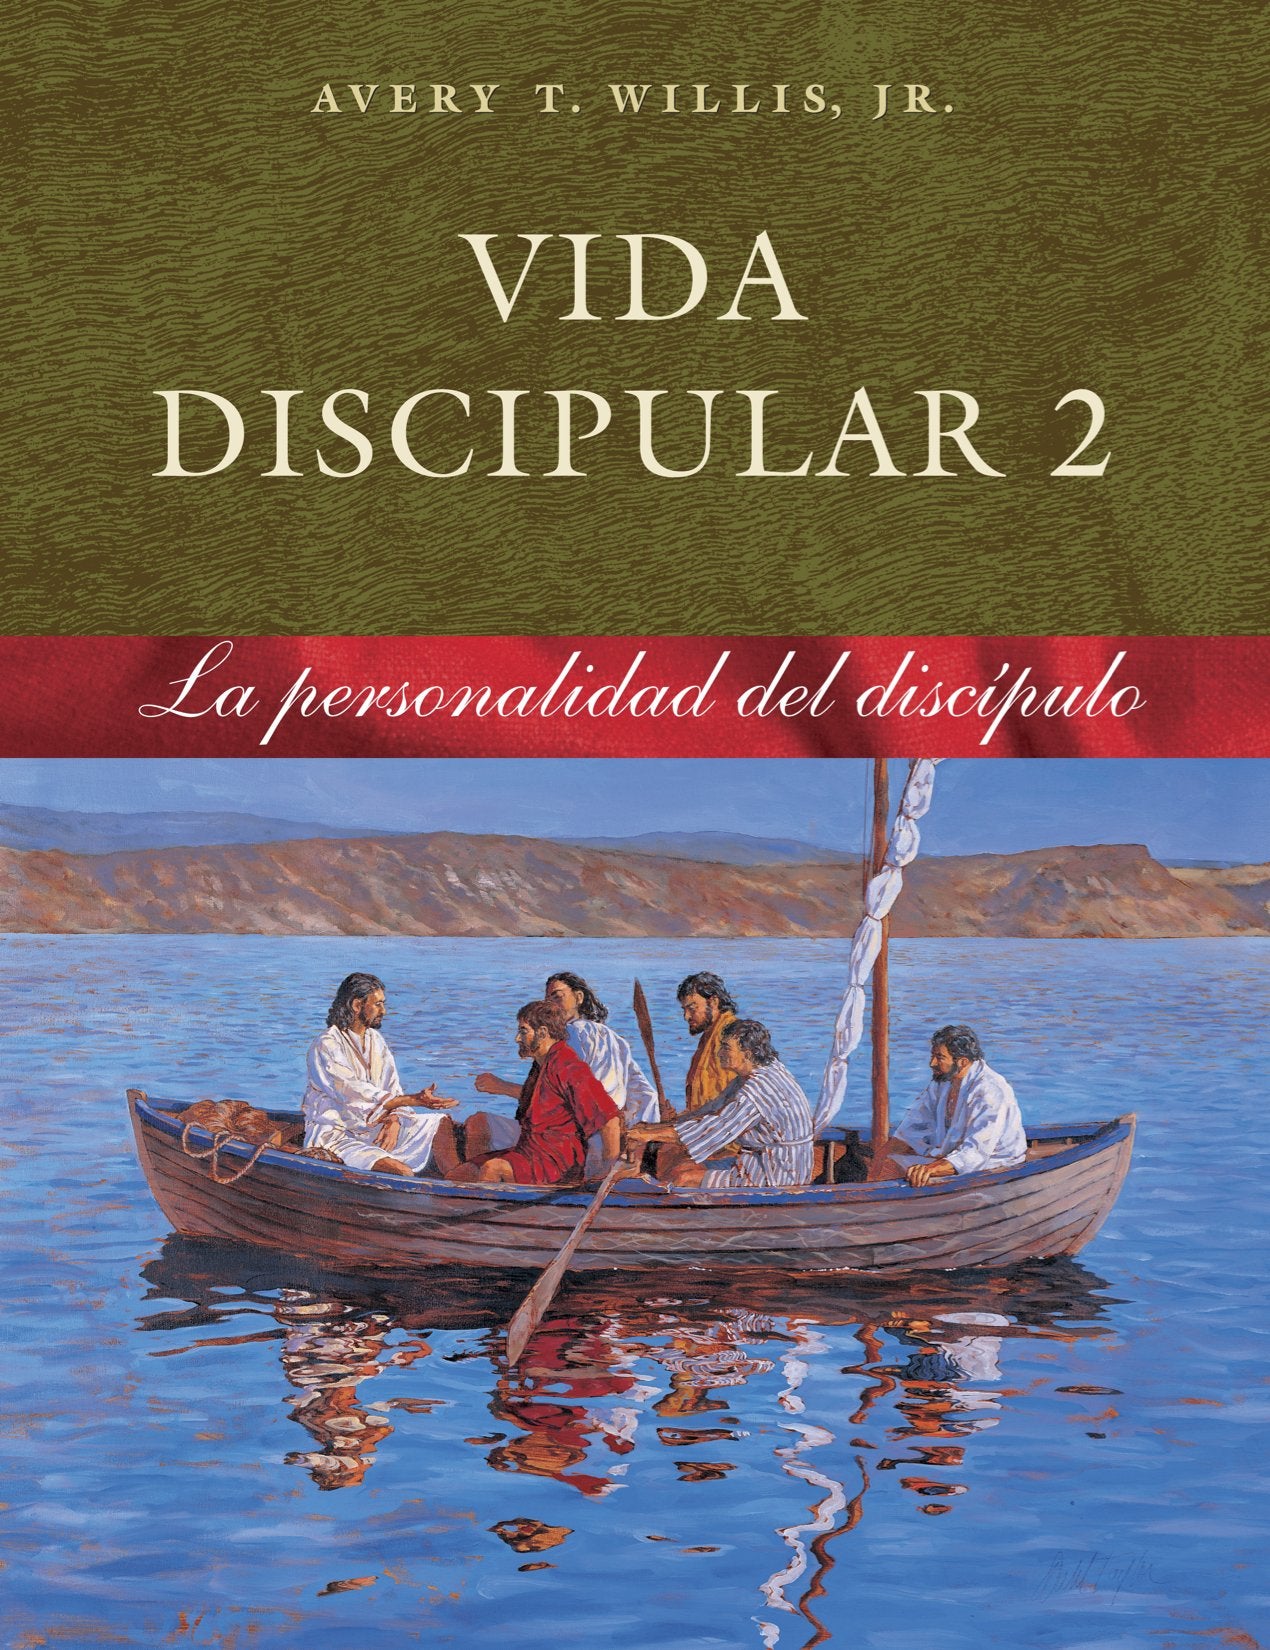 Vida discipular 2: La Personalidad del discípulo